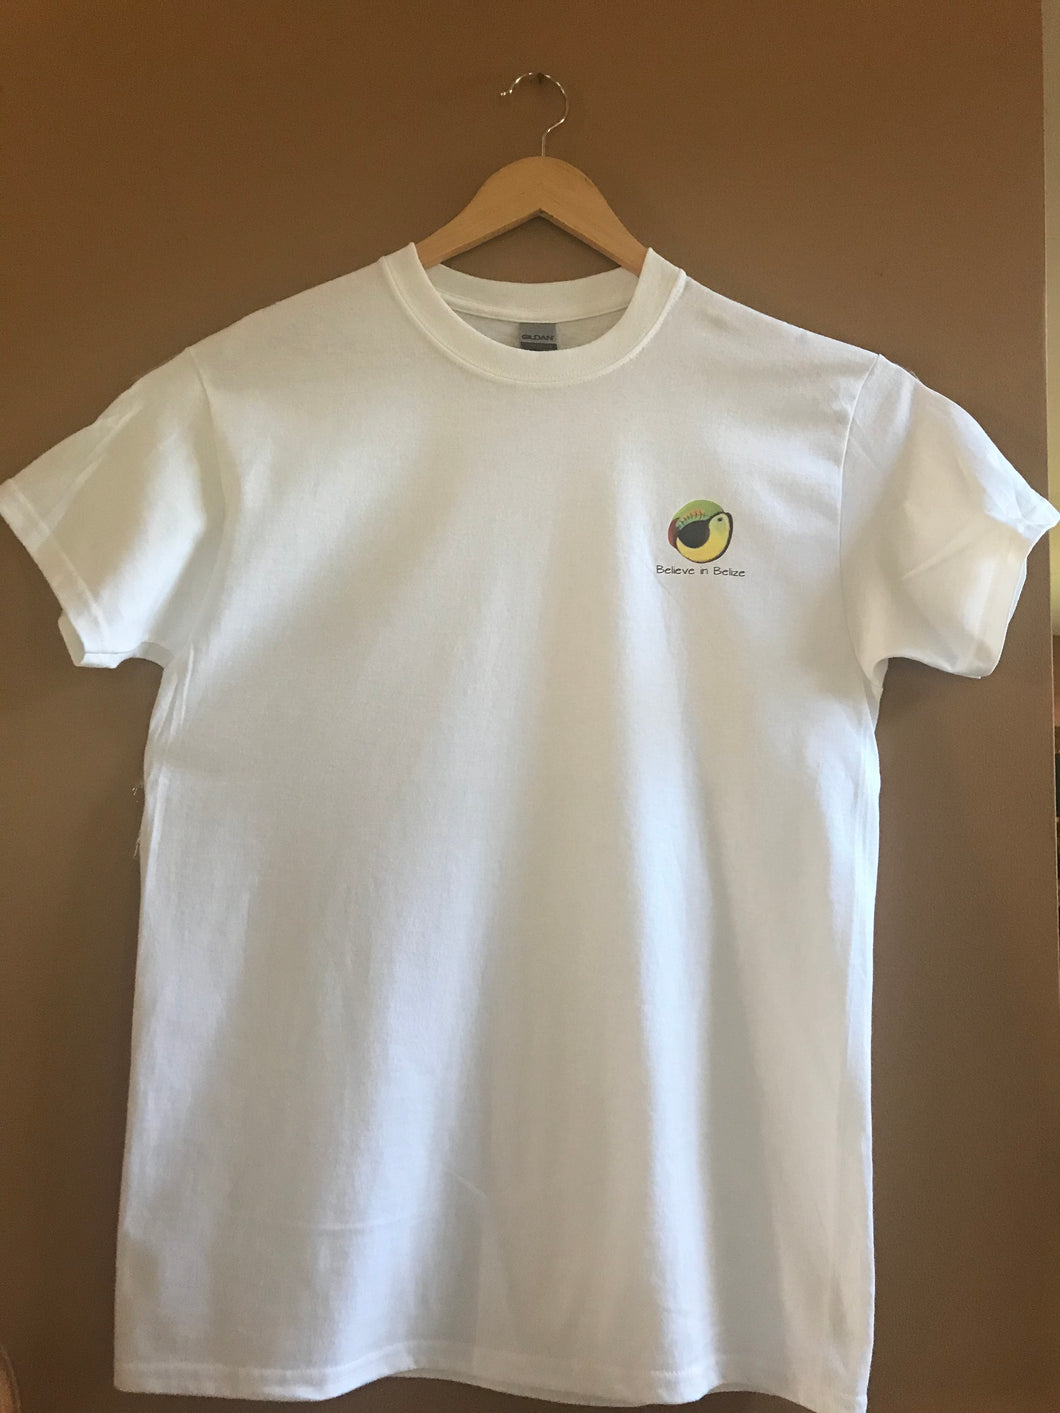 Believe in Belize Fundraiser T-Shirt